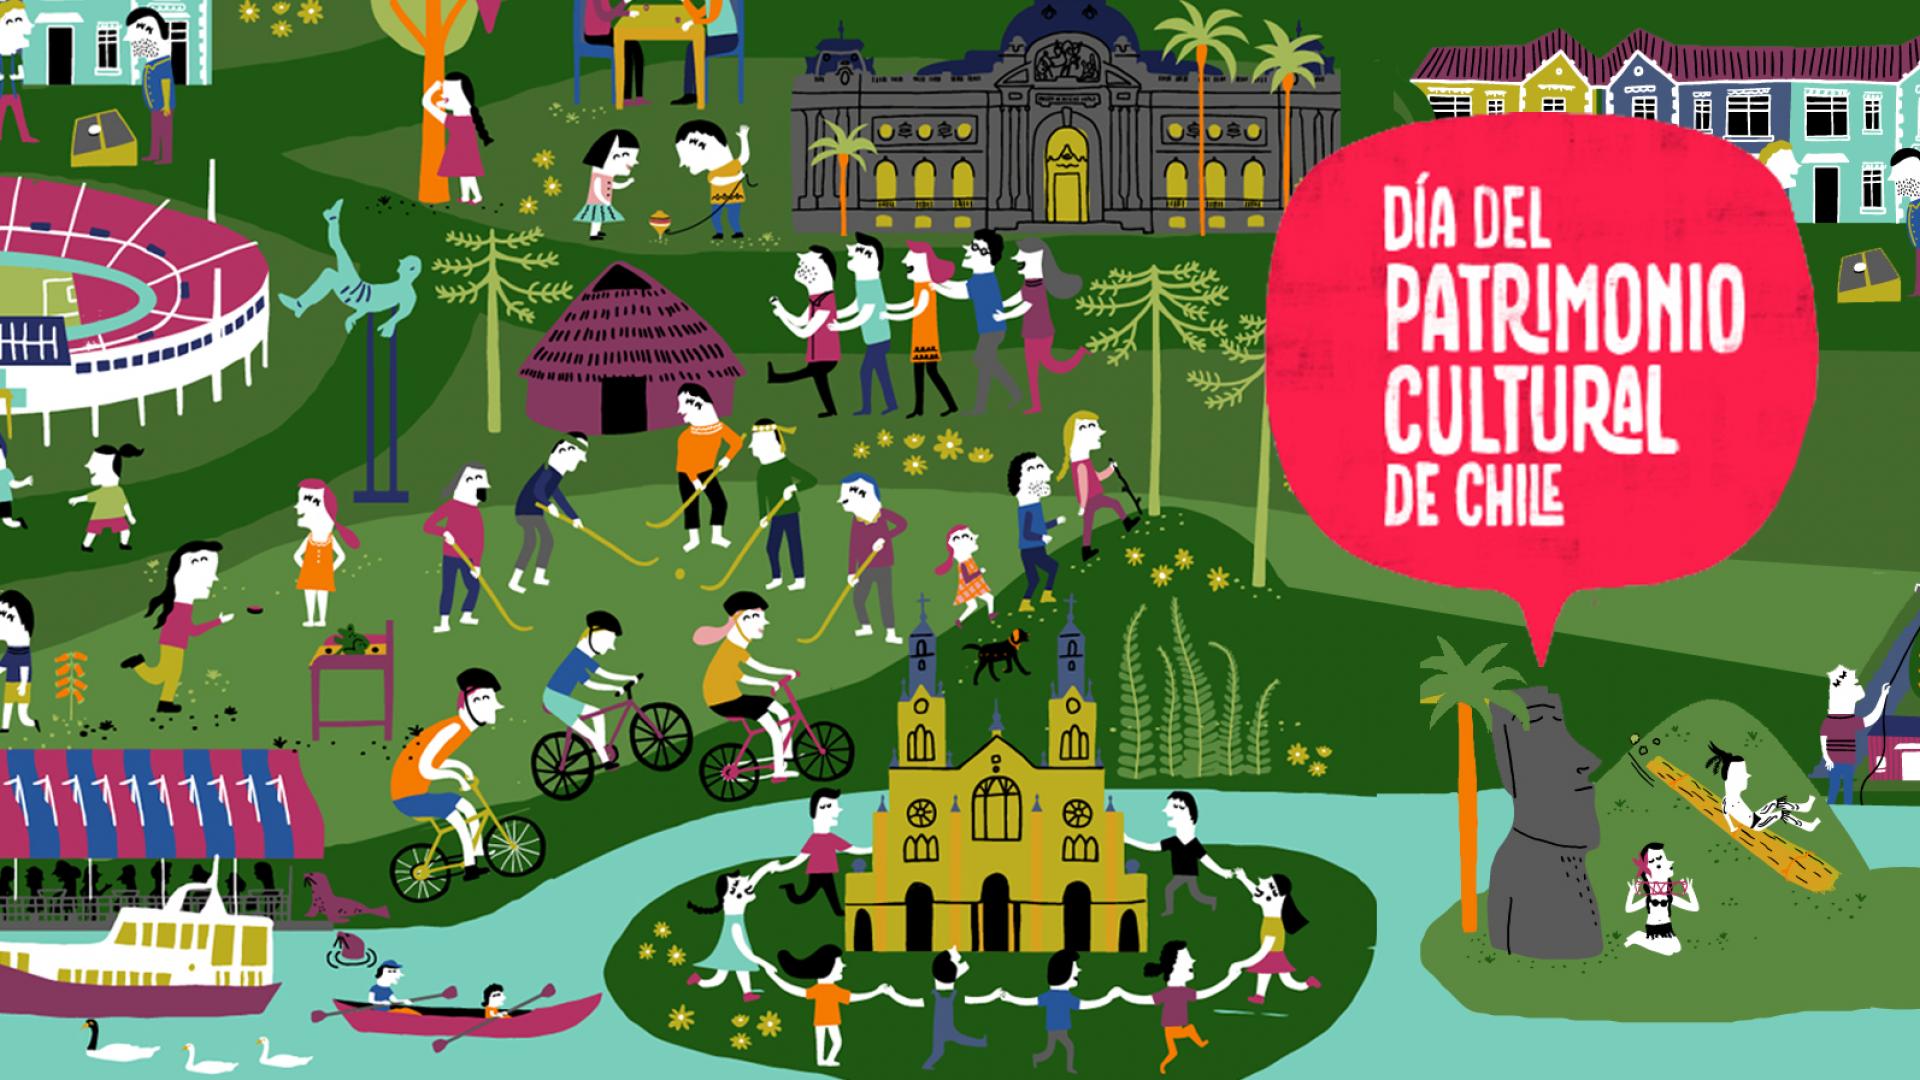 Imagen de Se abre convocatoria para participar en el Día del Patrimonio de Chile 2017